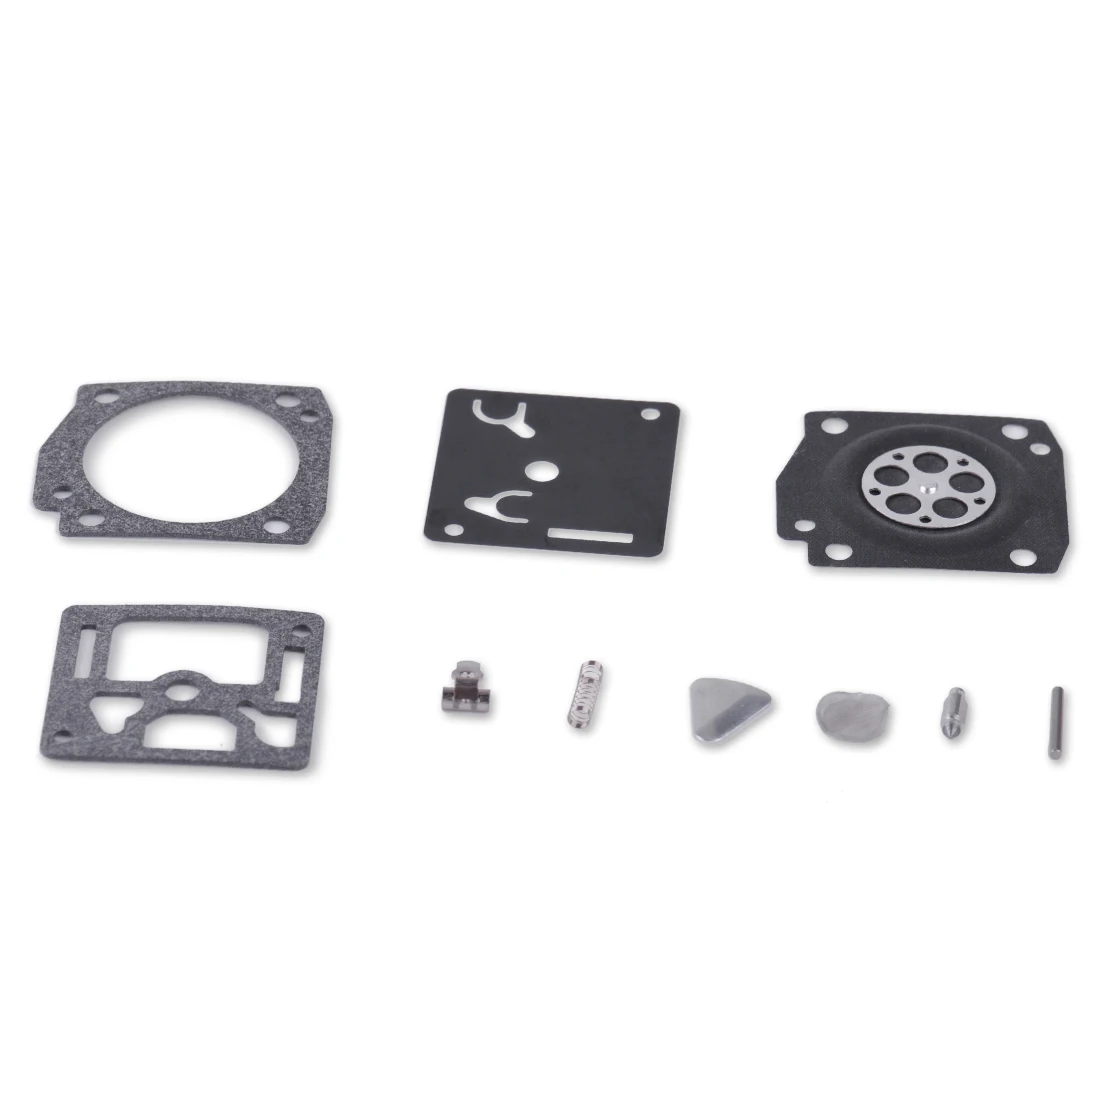 LETAOSK Nuevo Carburador Carburador Reconstruir Kit de Reparación de Ajuste para Stihl 034 044 036 MS340 MS360 Motosierra 0